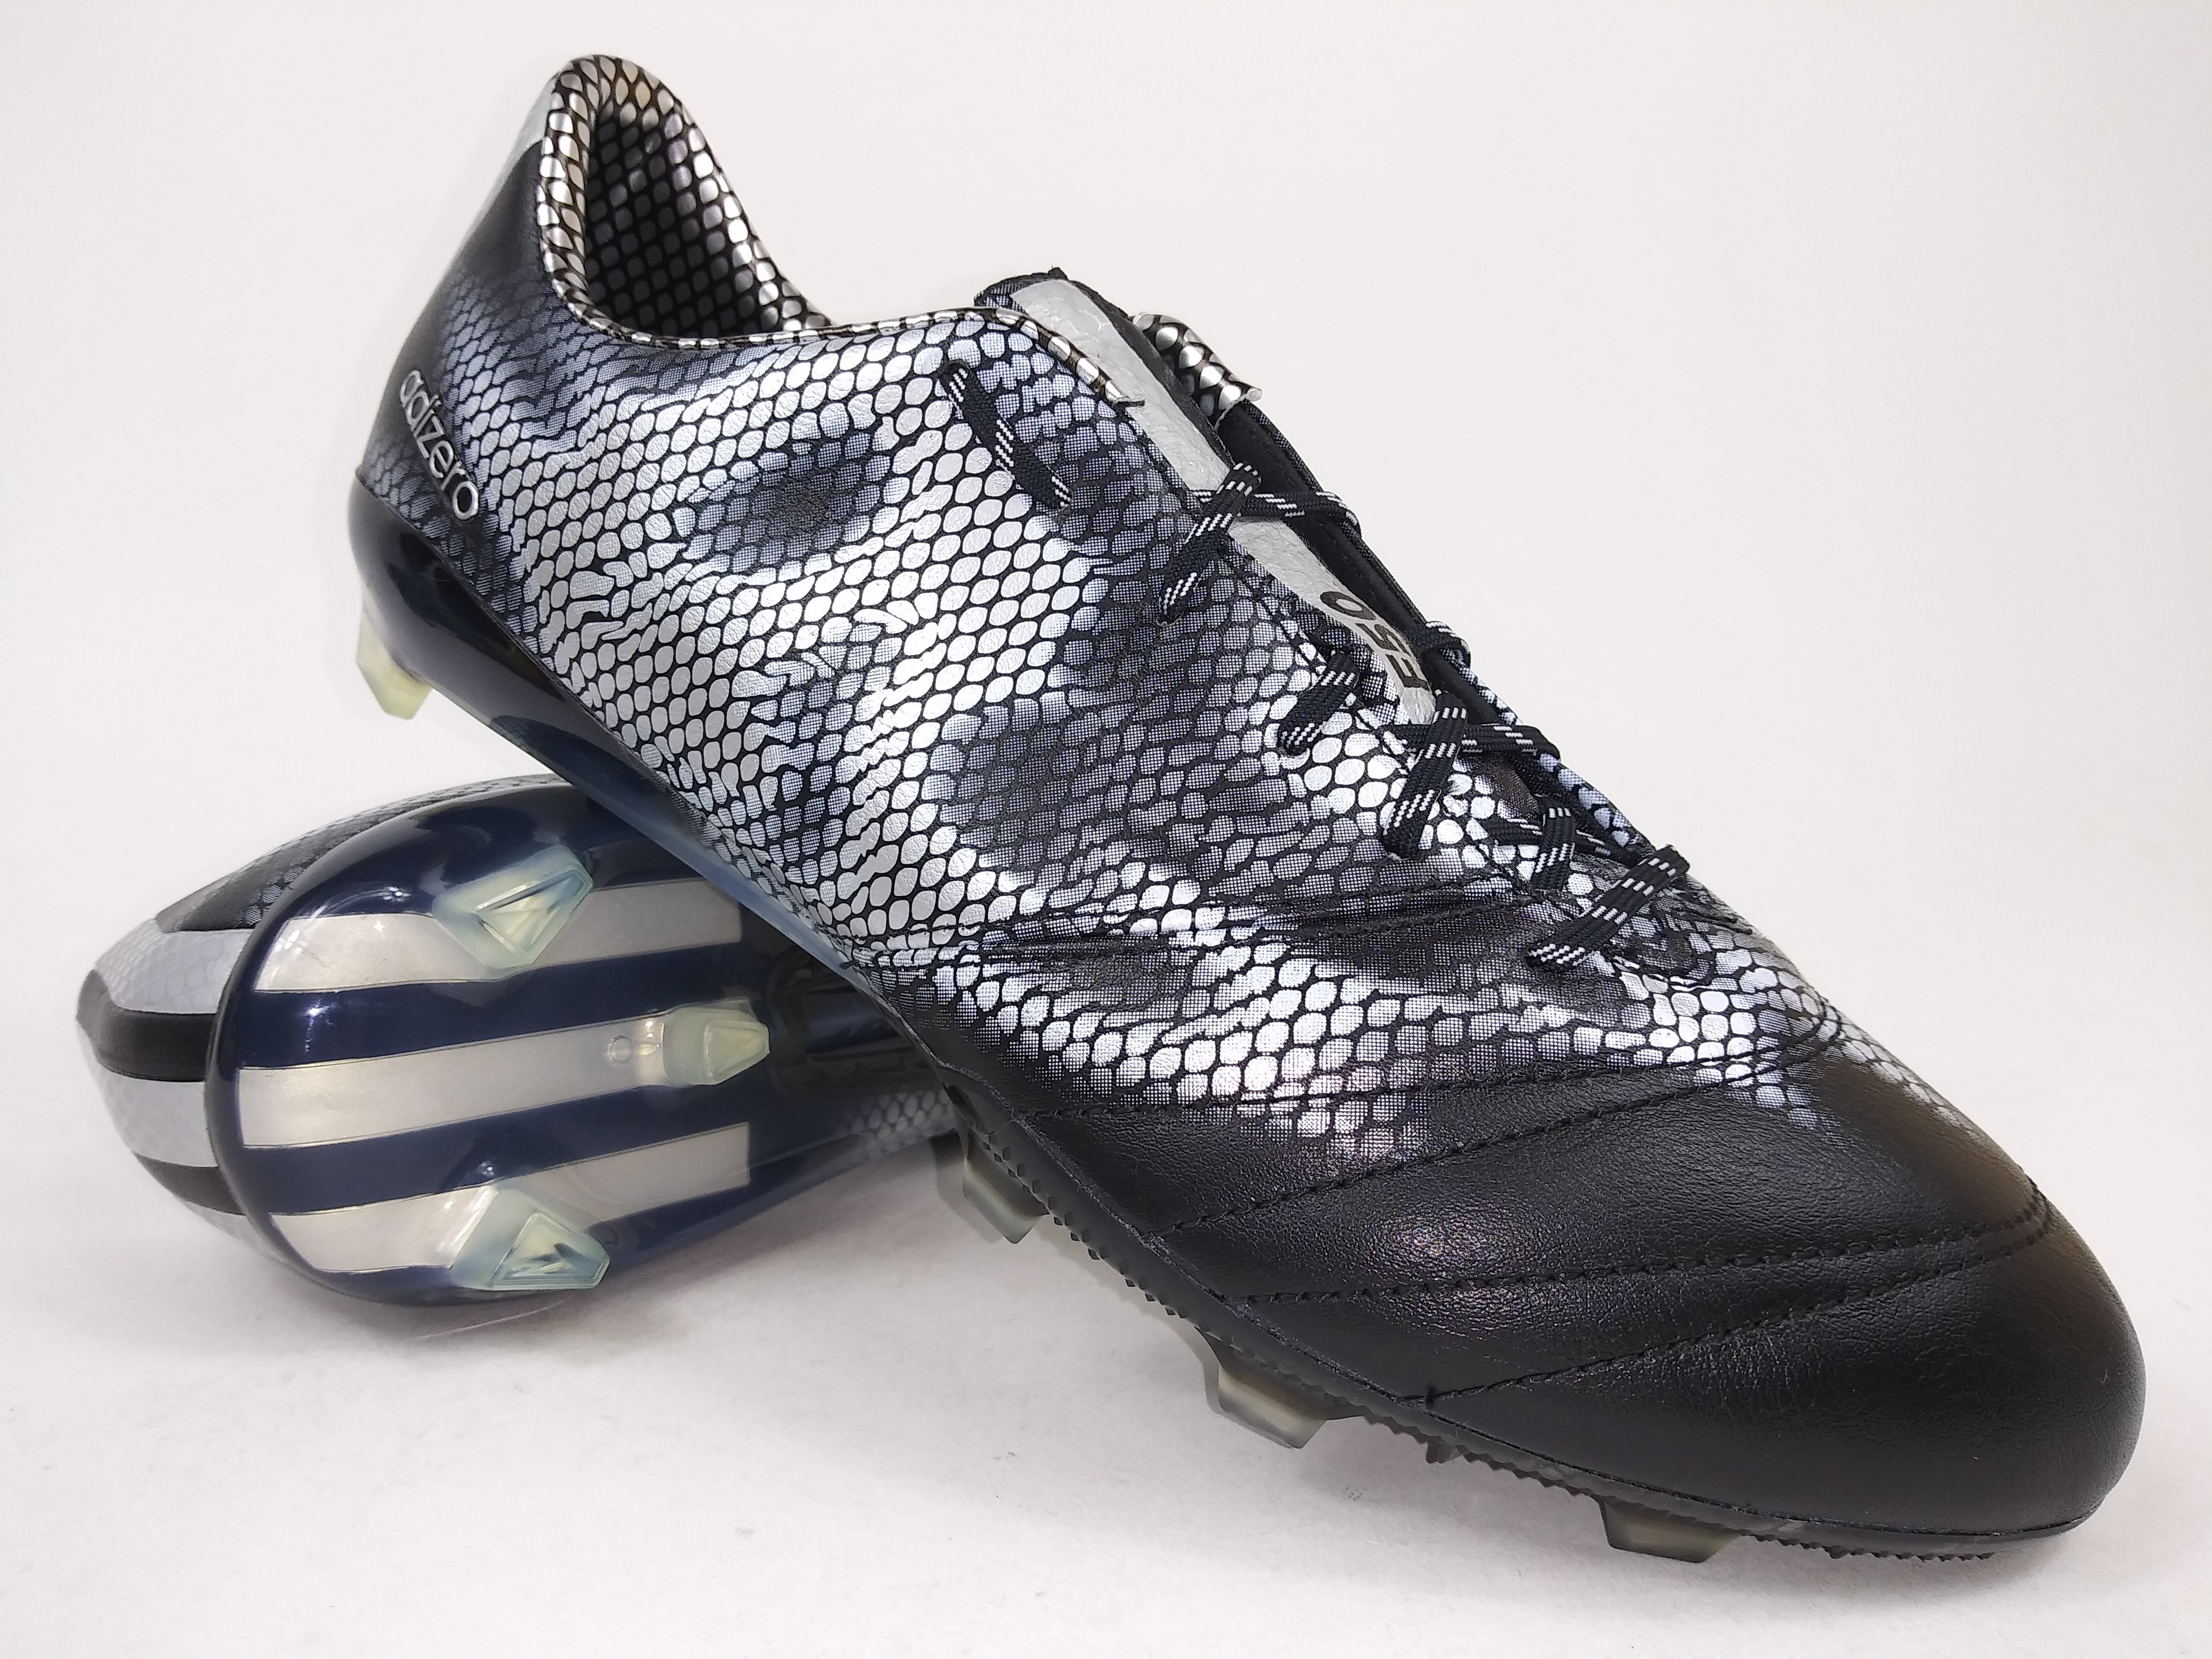 manual Democracia Ejercicio mañanero Adidas F50 Adizero FG Leather Black Silver – Villegas Footwear